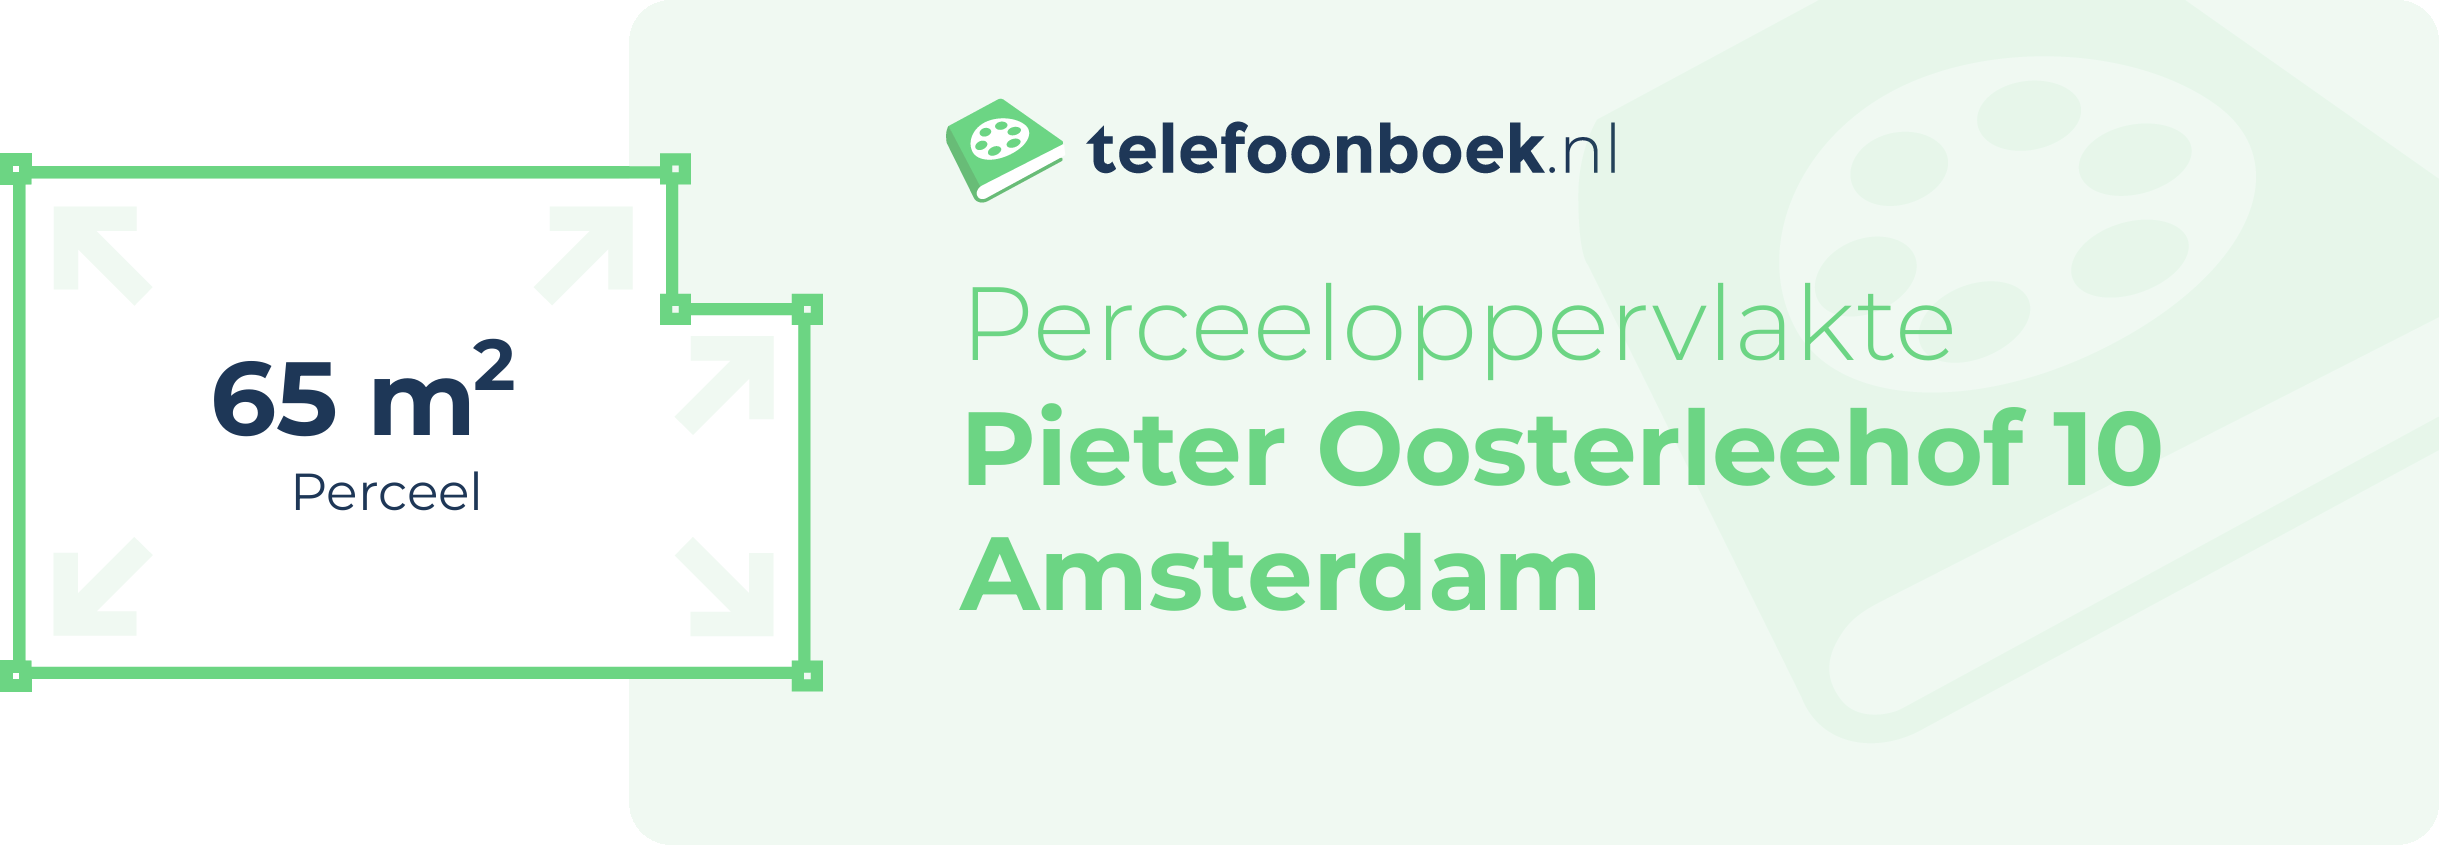 Perceeloppervlakte Pieter Oosterleehof 10 Amsterdam